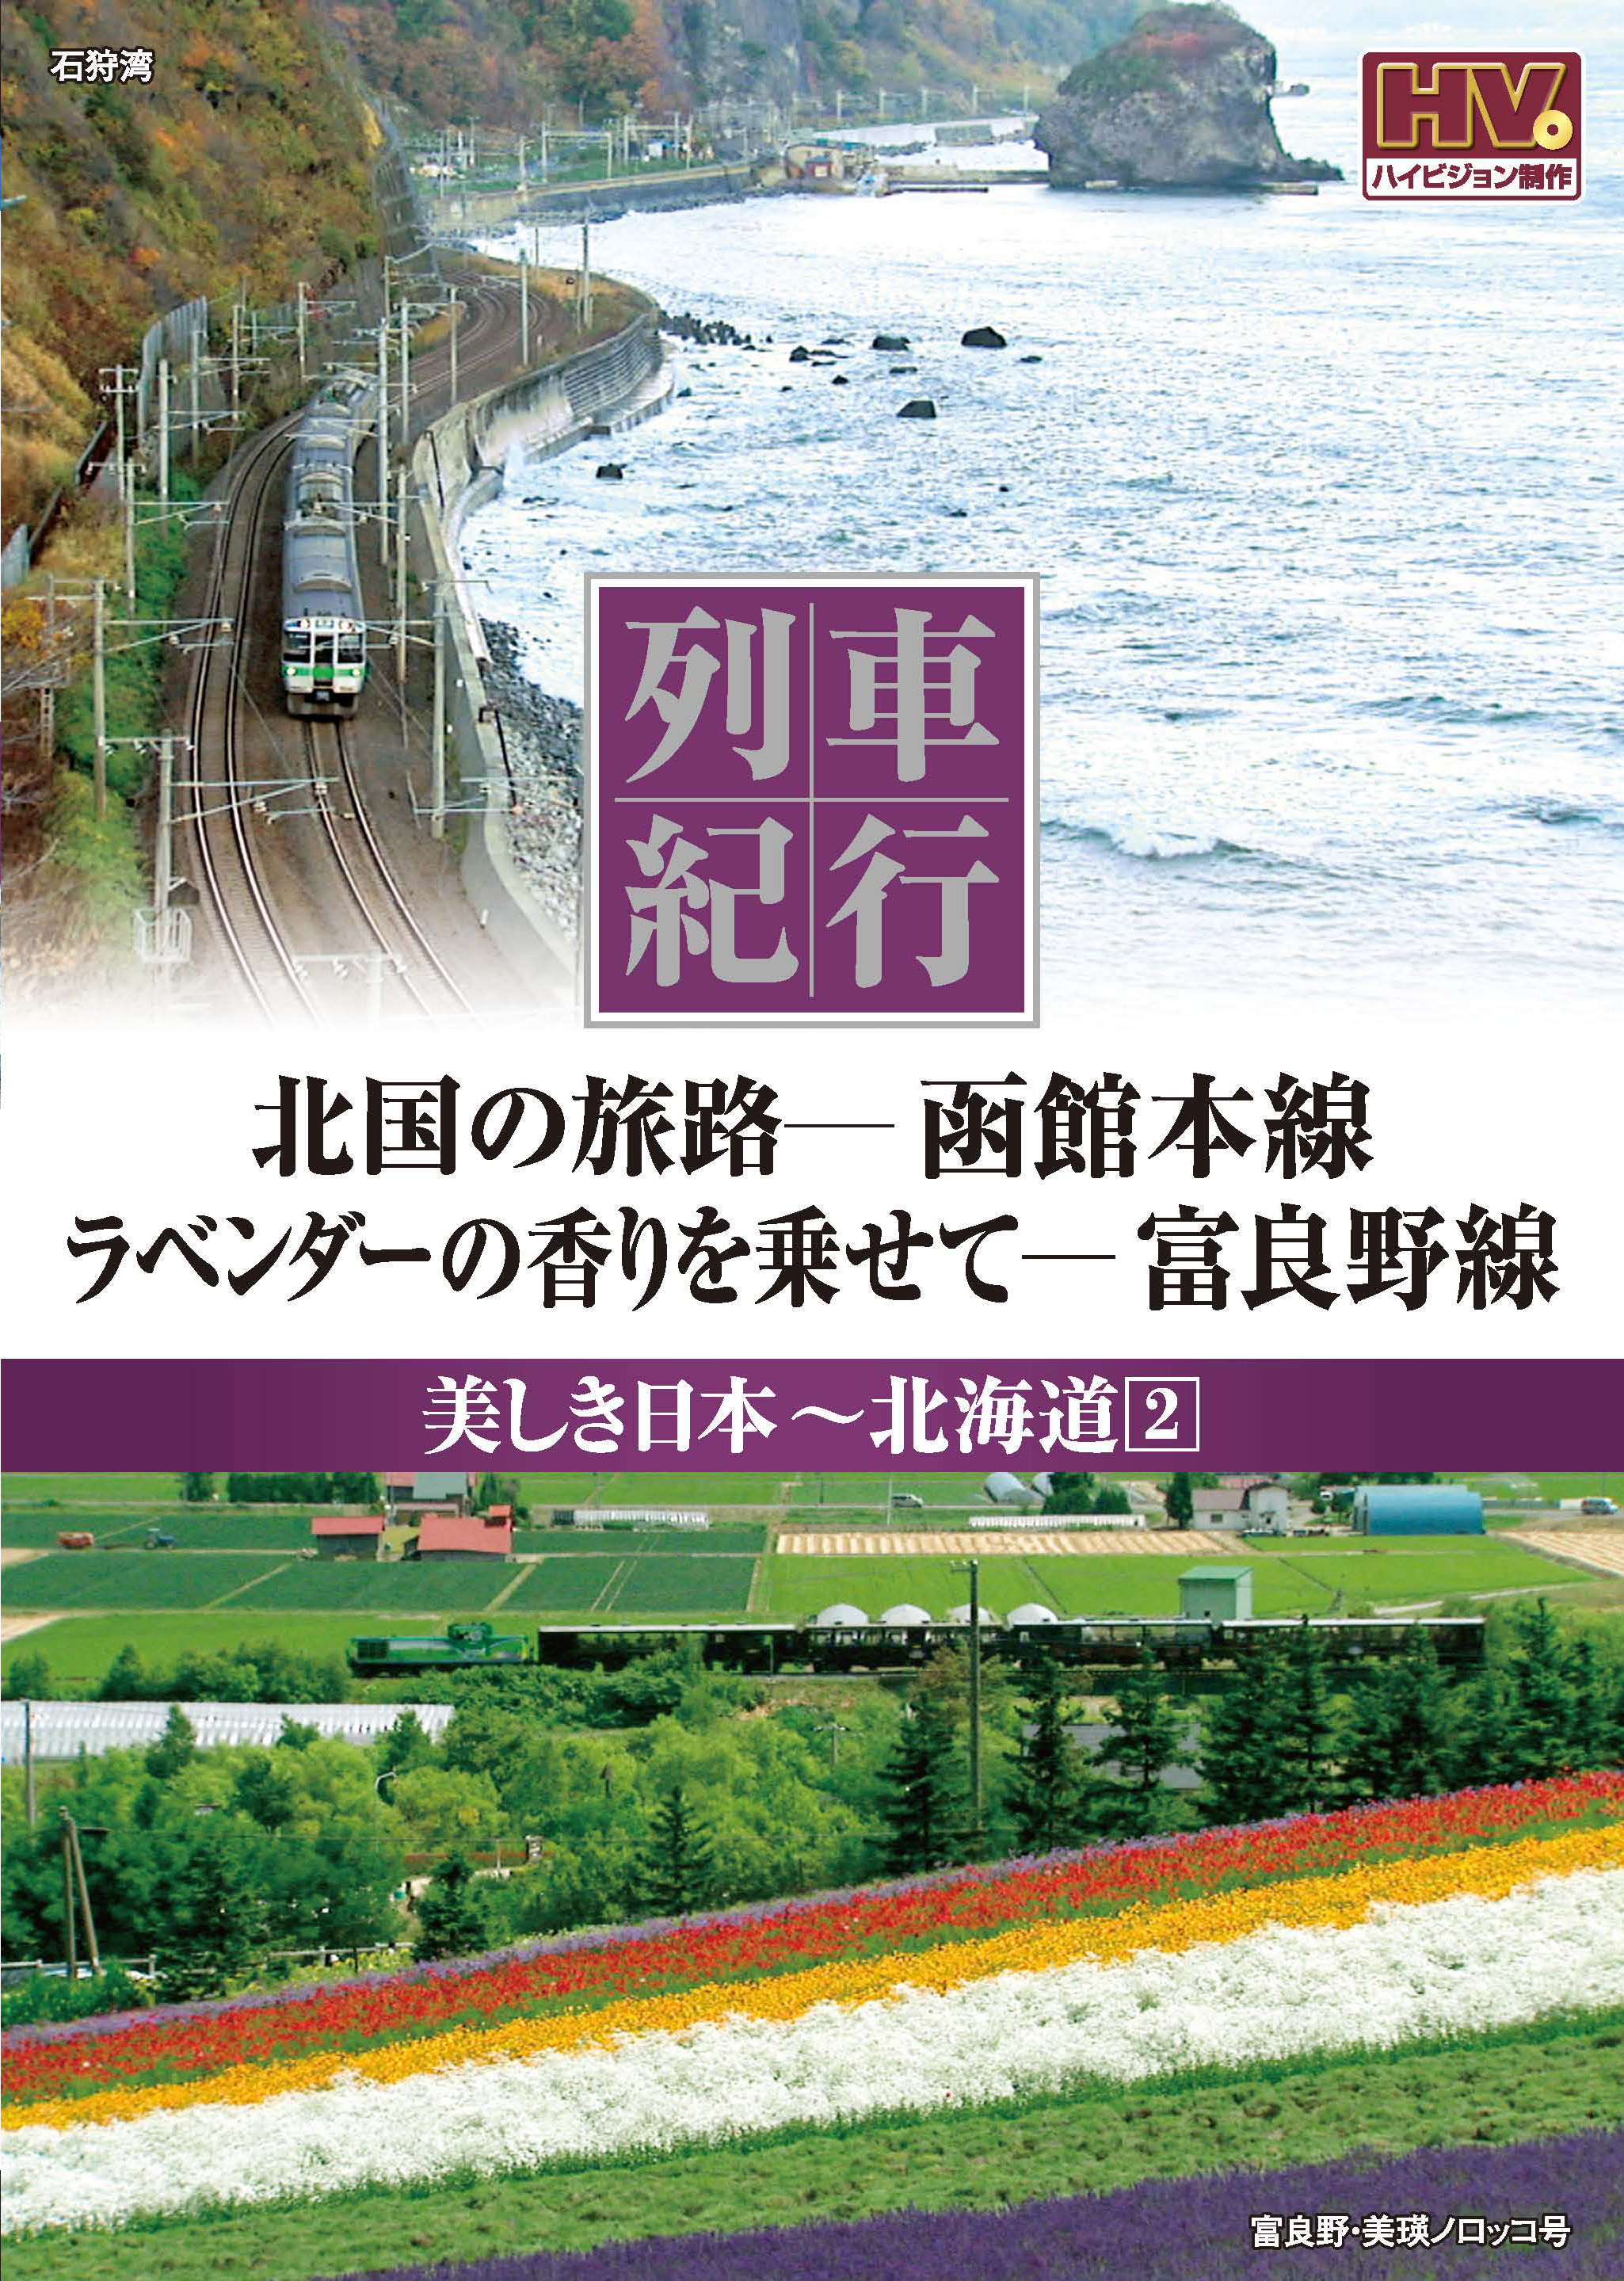 列車紀行 美しき日本 北海道 2